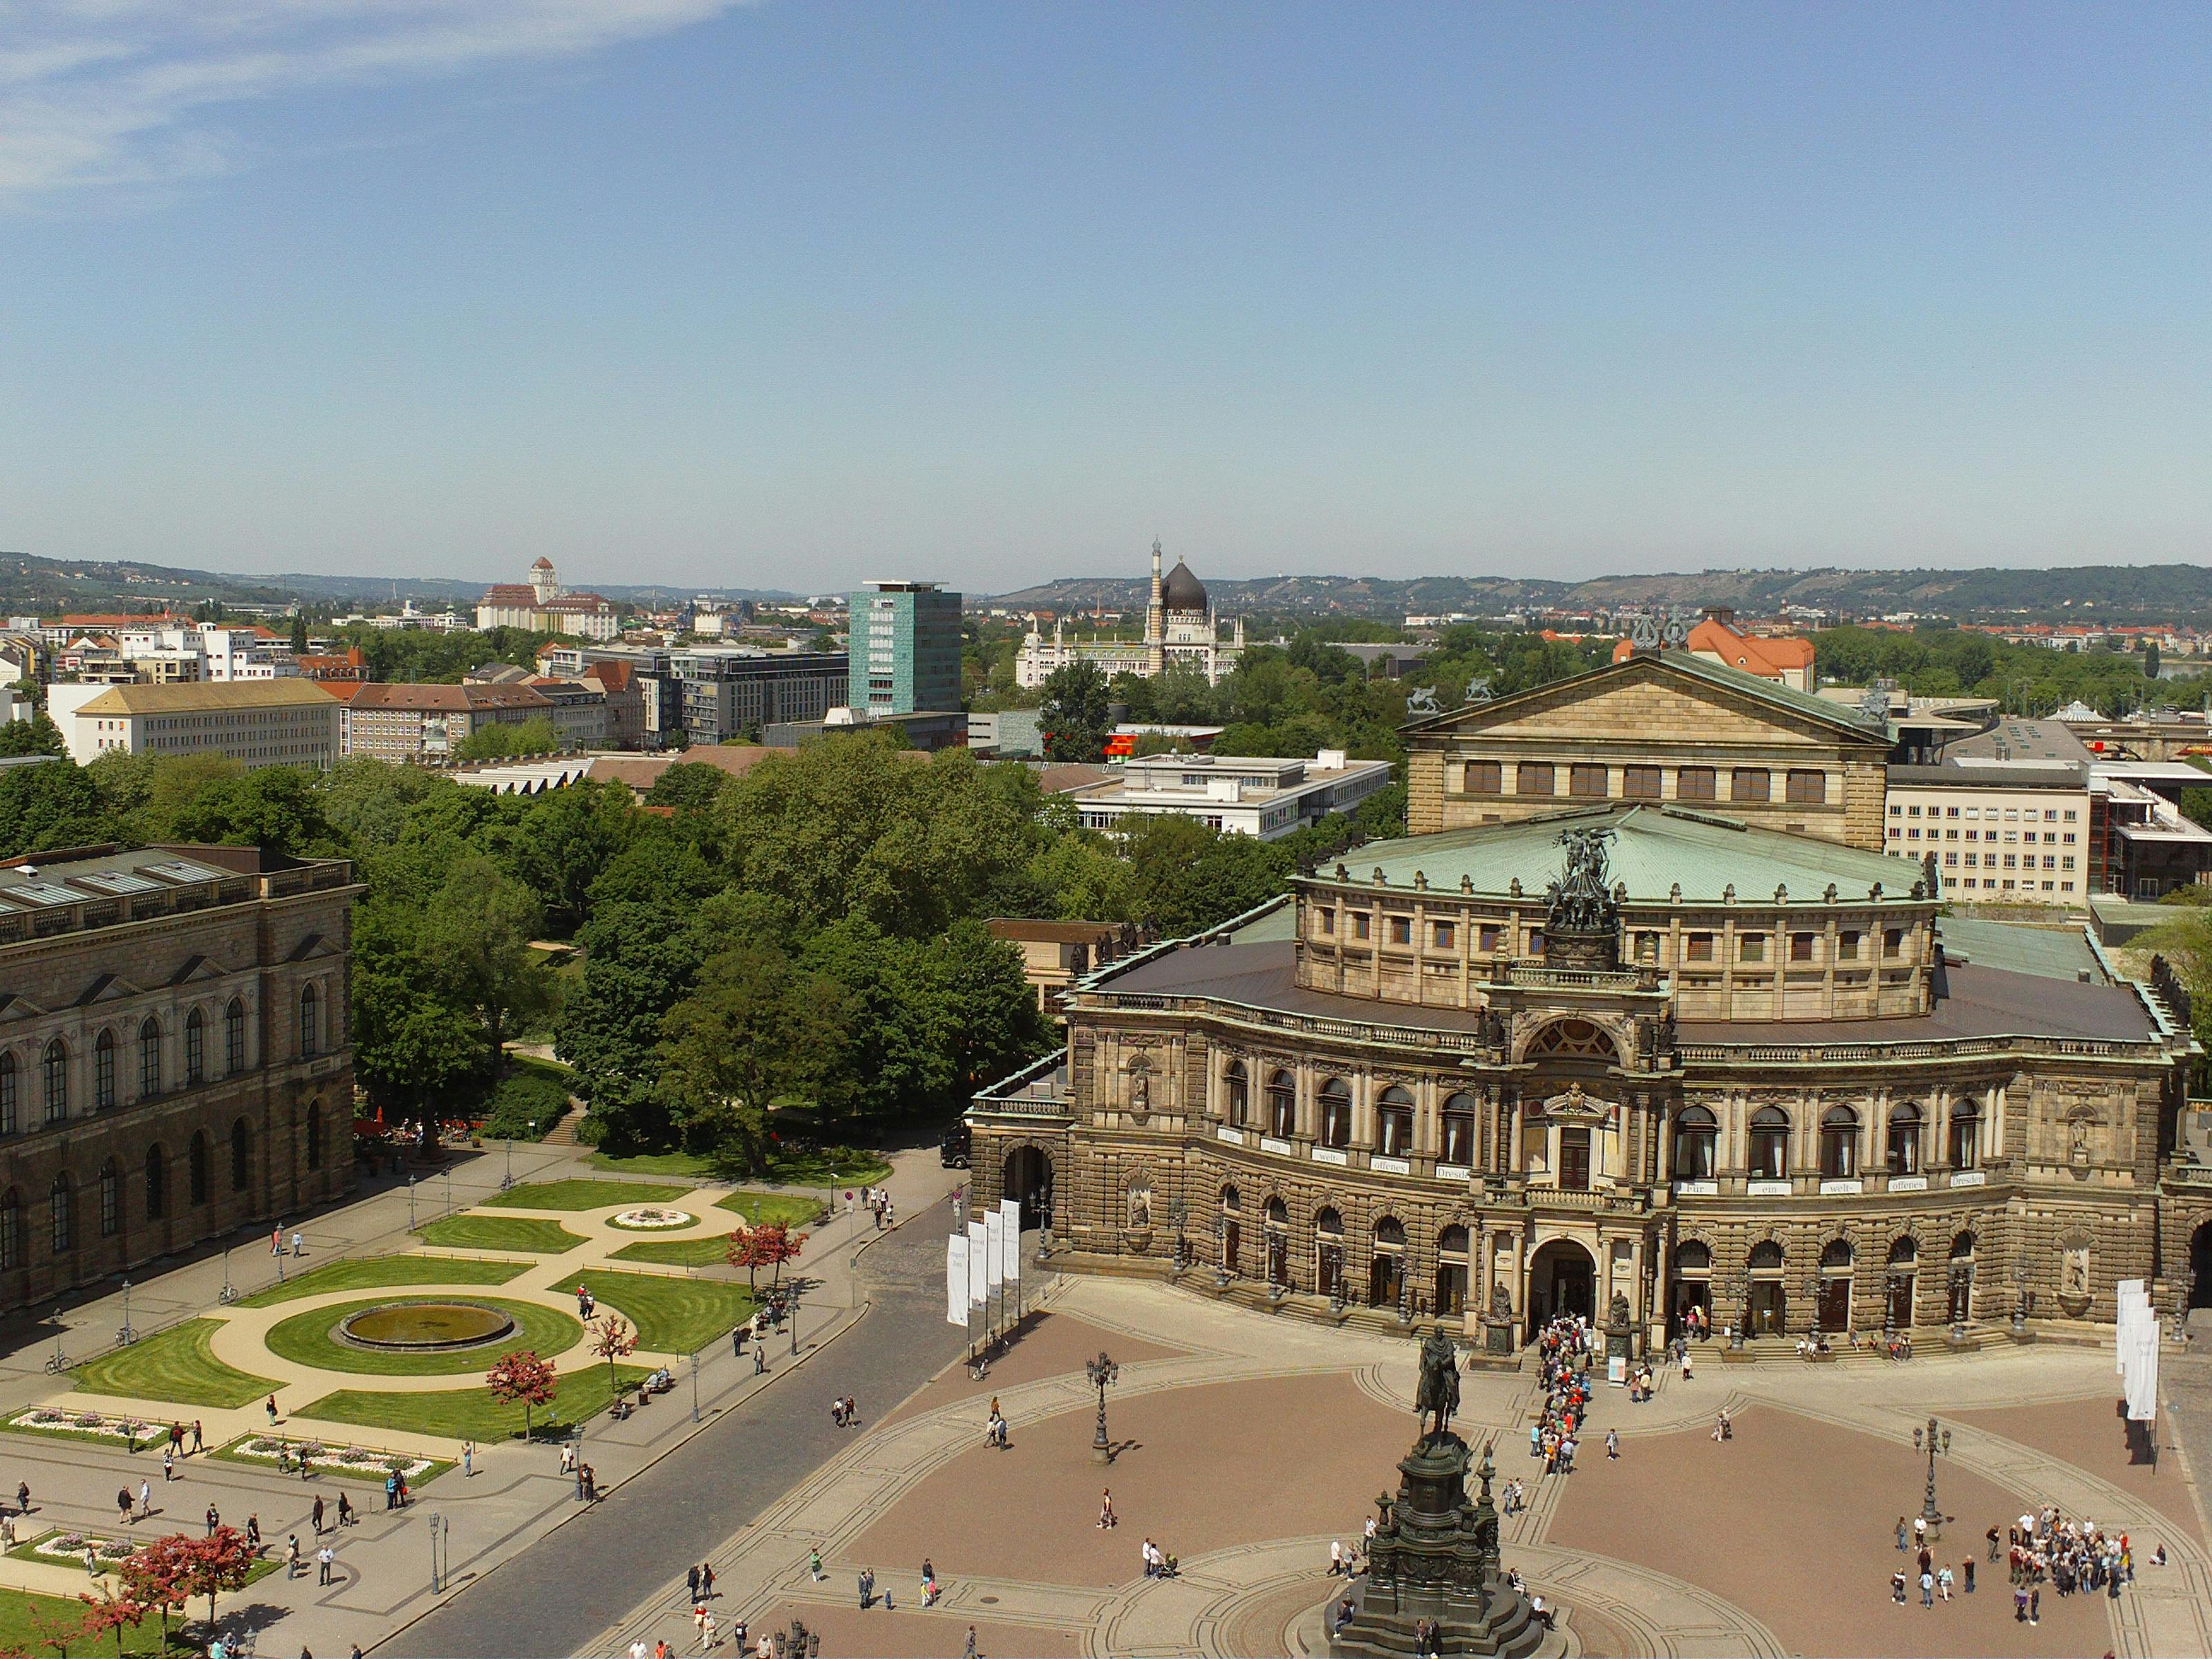 Visite de la ville de Dresde avec New Green Vault et visite de l'opéra Semper